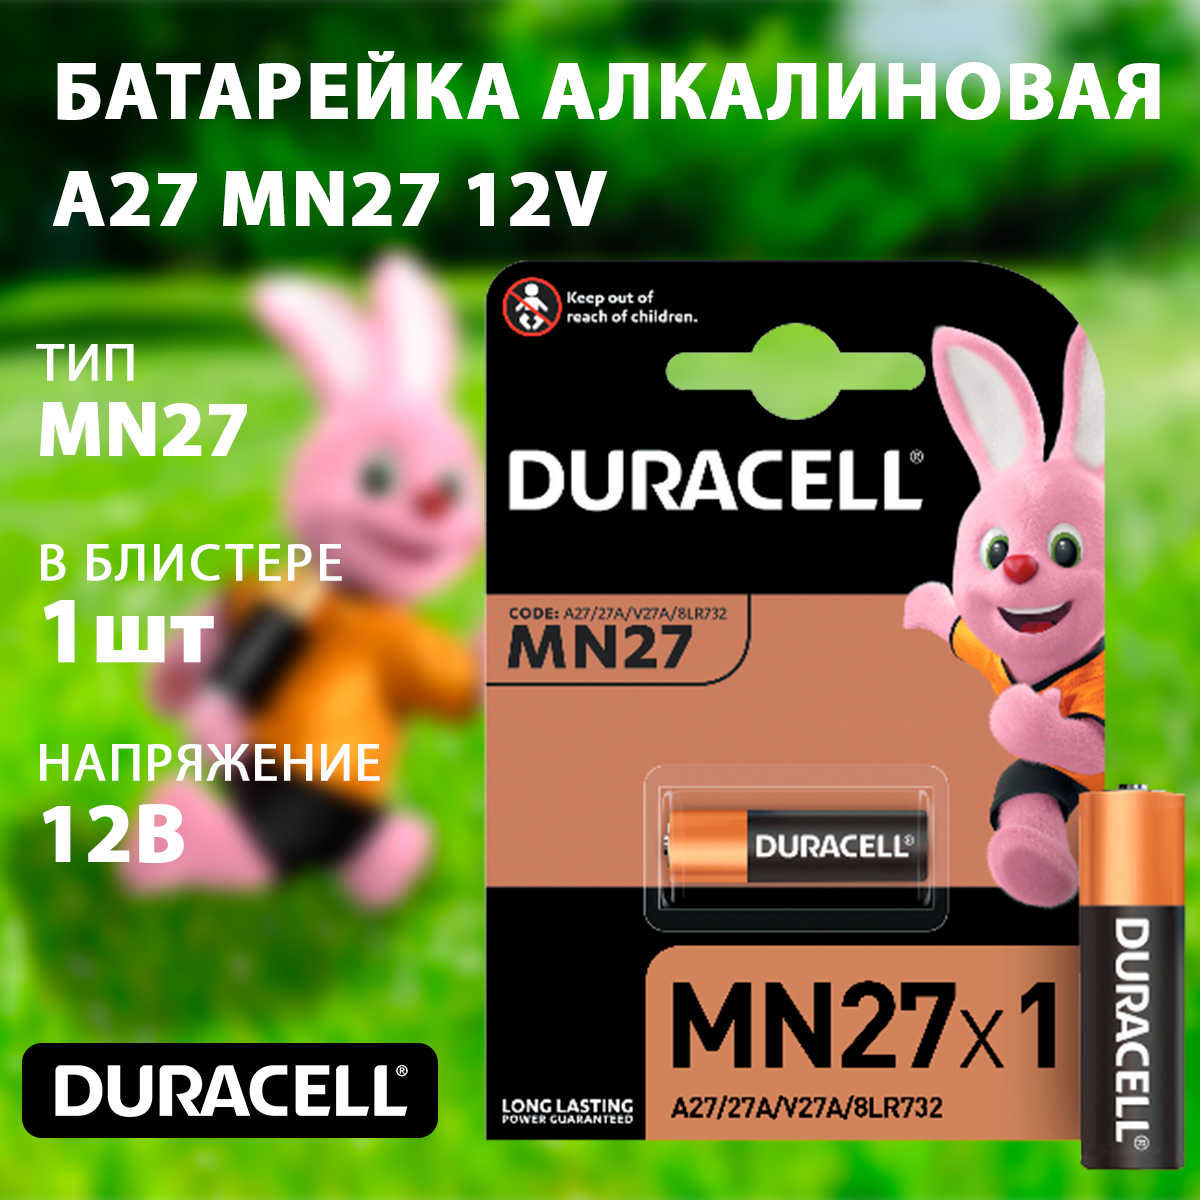 Изображение 5007388 | Батарейка алкалиновая A27 (MN27) 12V (1 шт.) 5007388 в магазине ЭлектроМИР